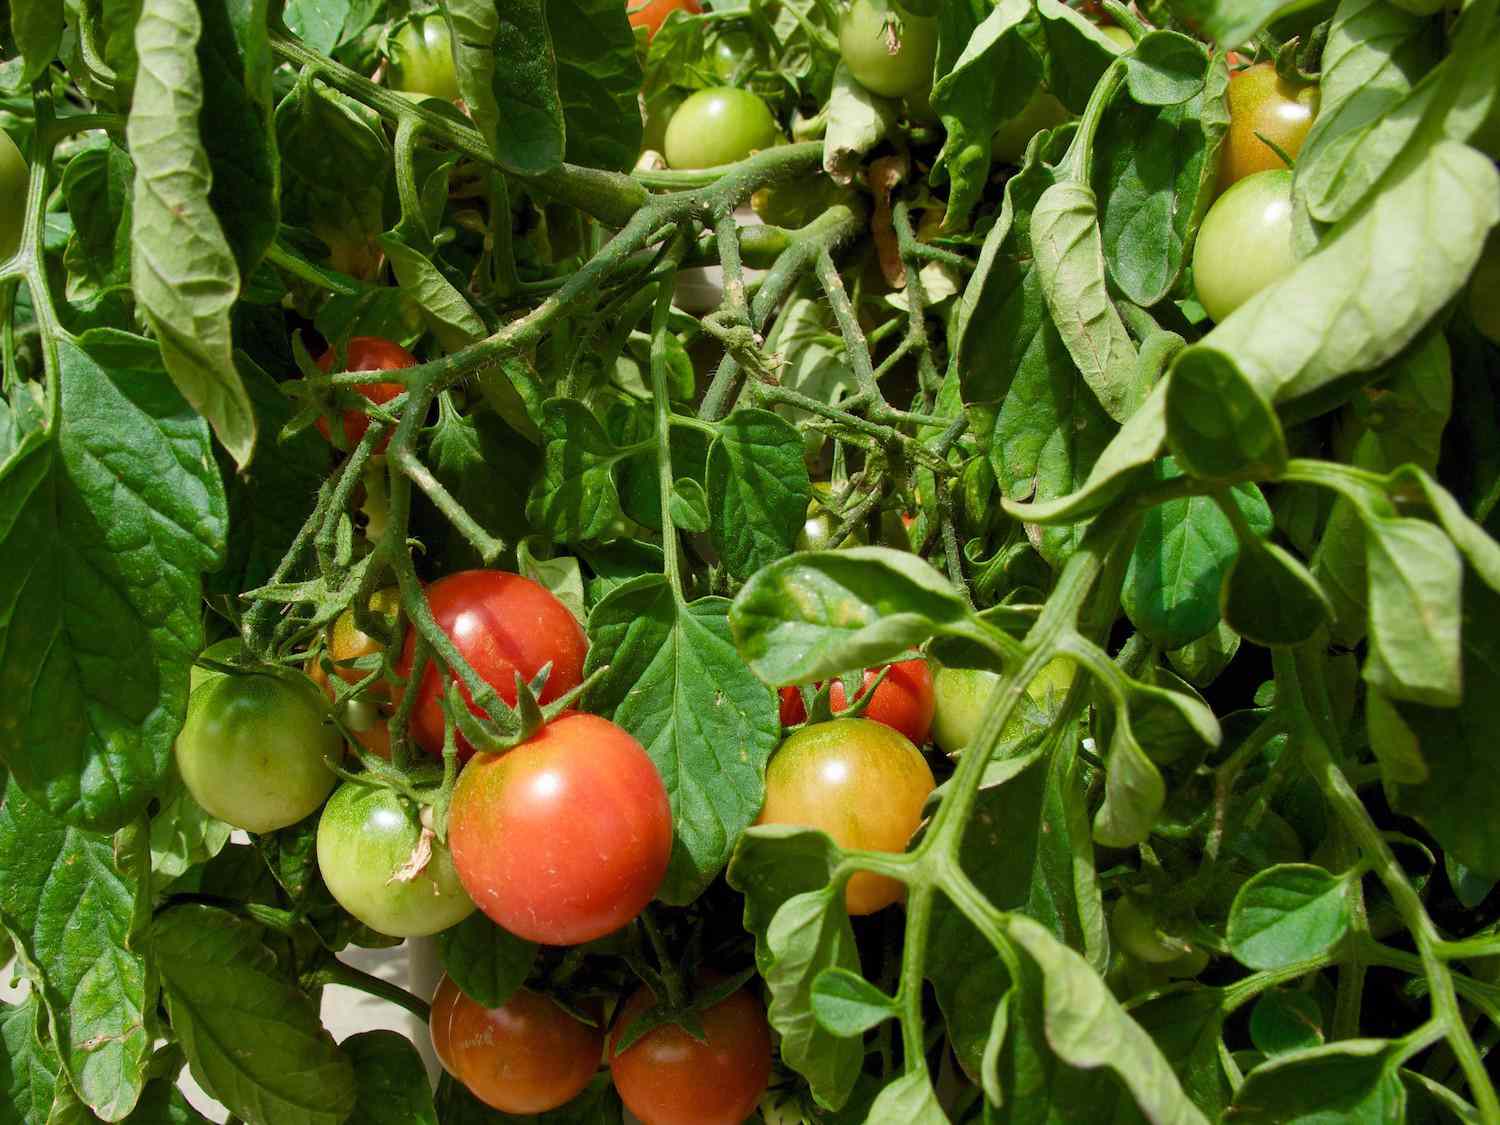 Una maraña de hojas verdes y enredaderas rodean un racimo de tomates cherry en distintos estados de maduración